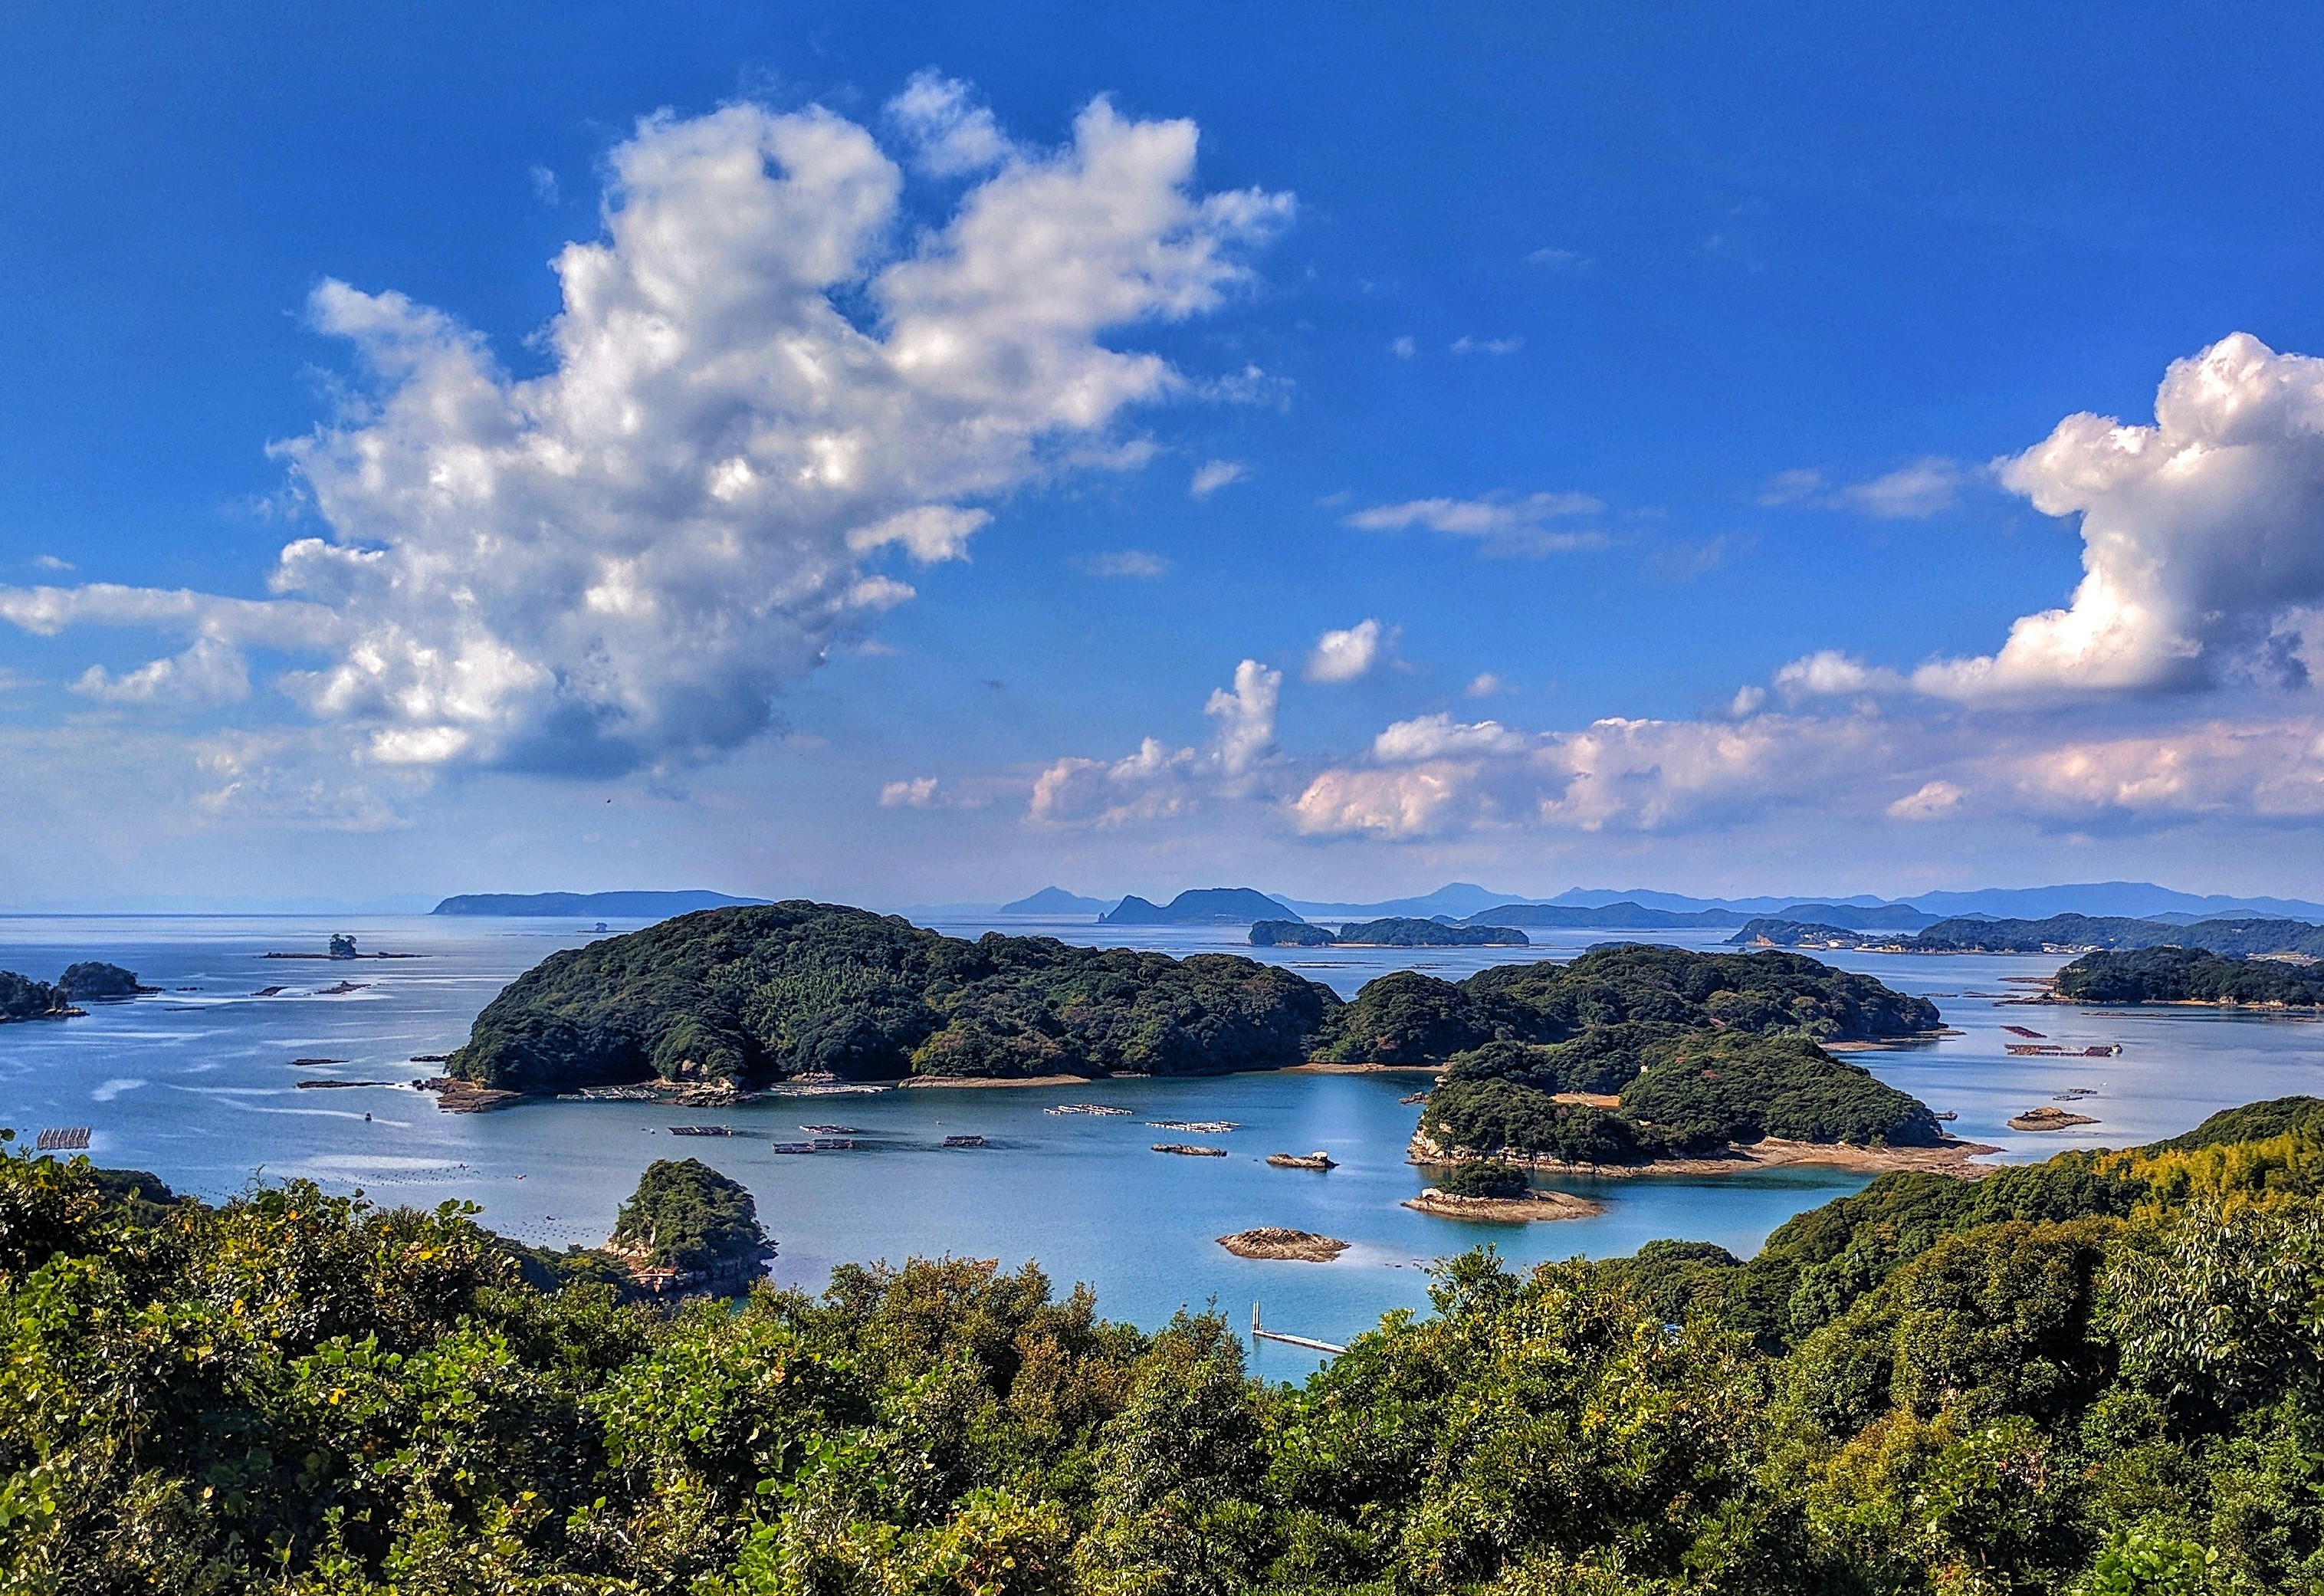 展望台、遊覧船、美味しい牡蠣⁉ 長崎県九十九島の見どころ